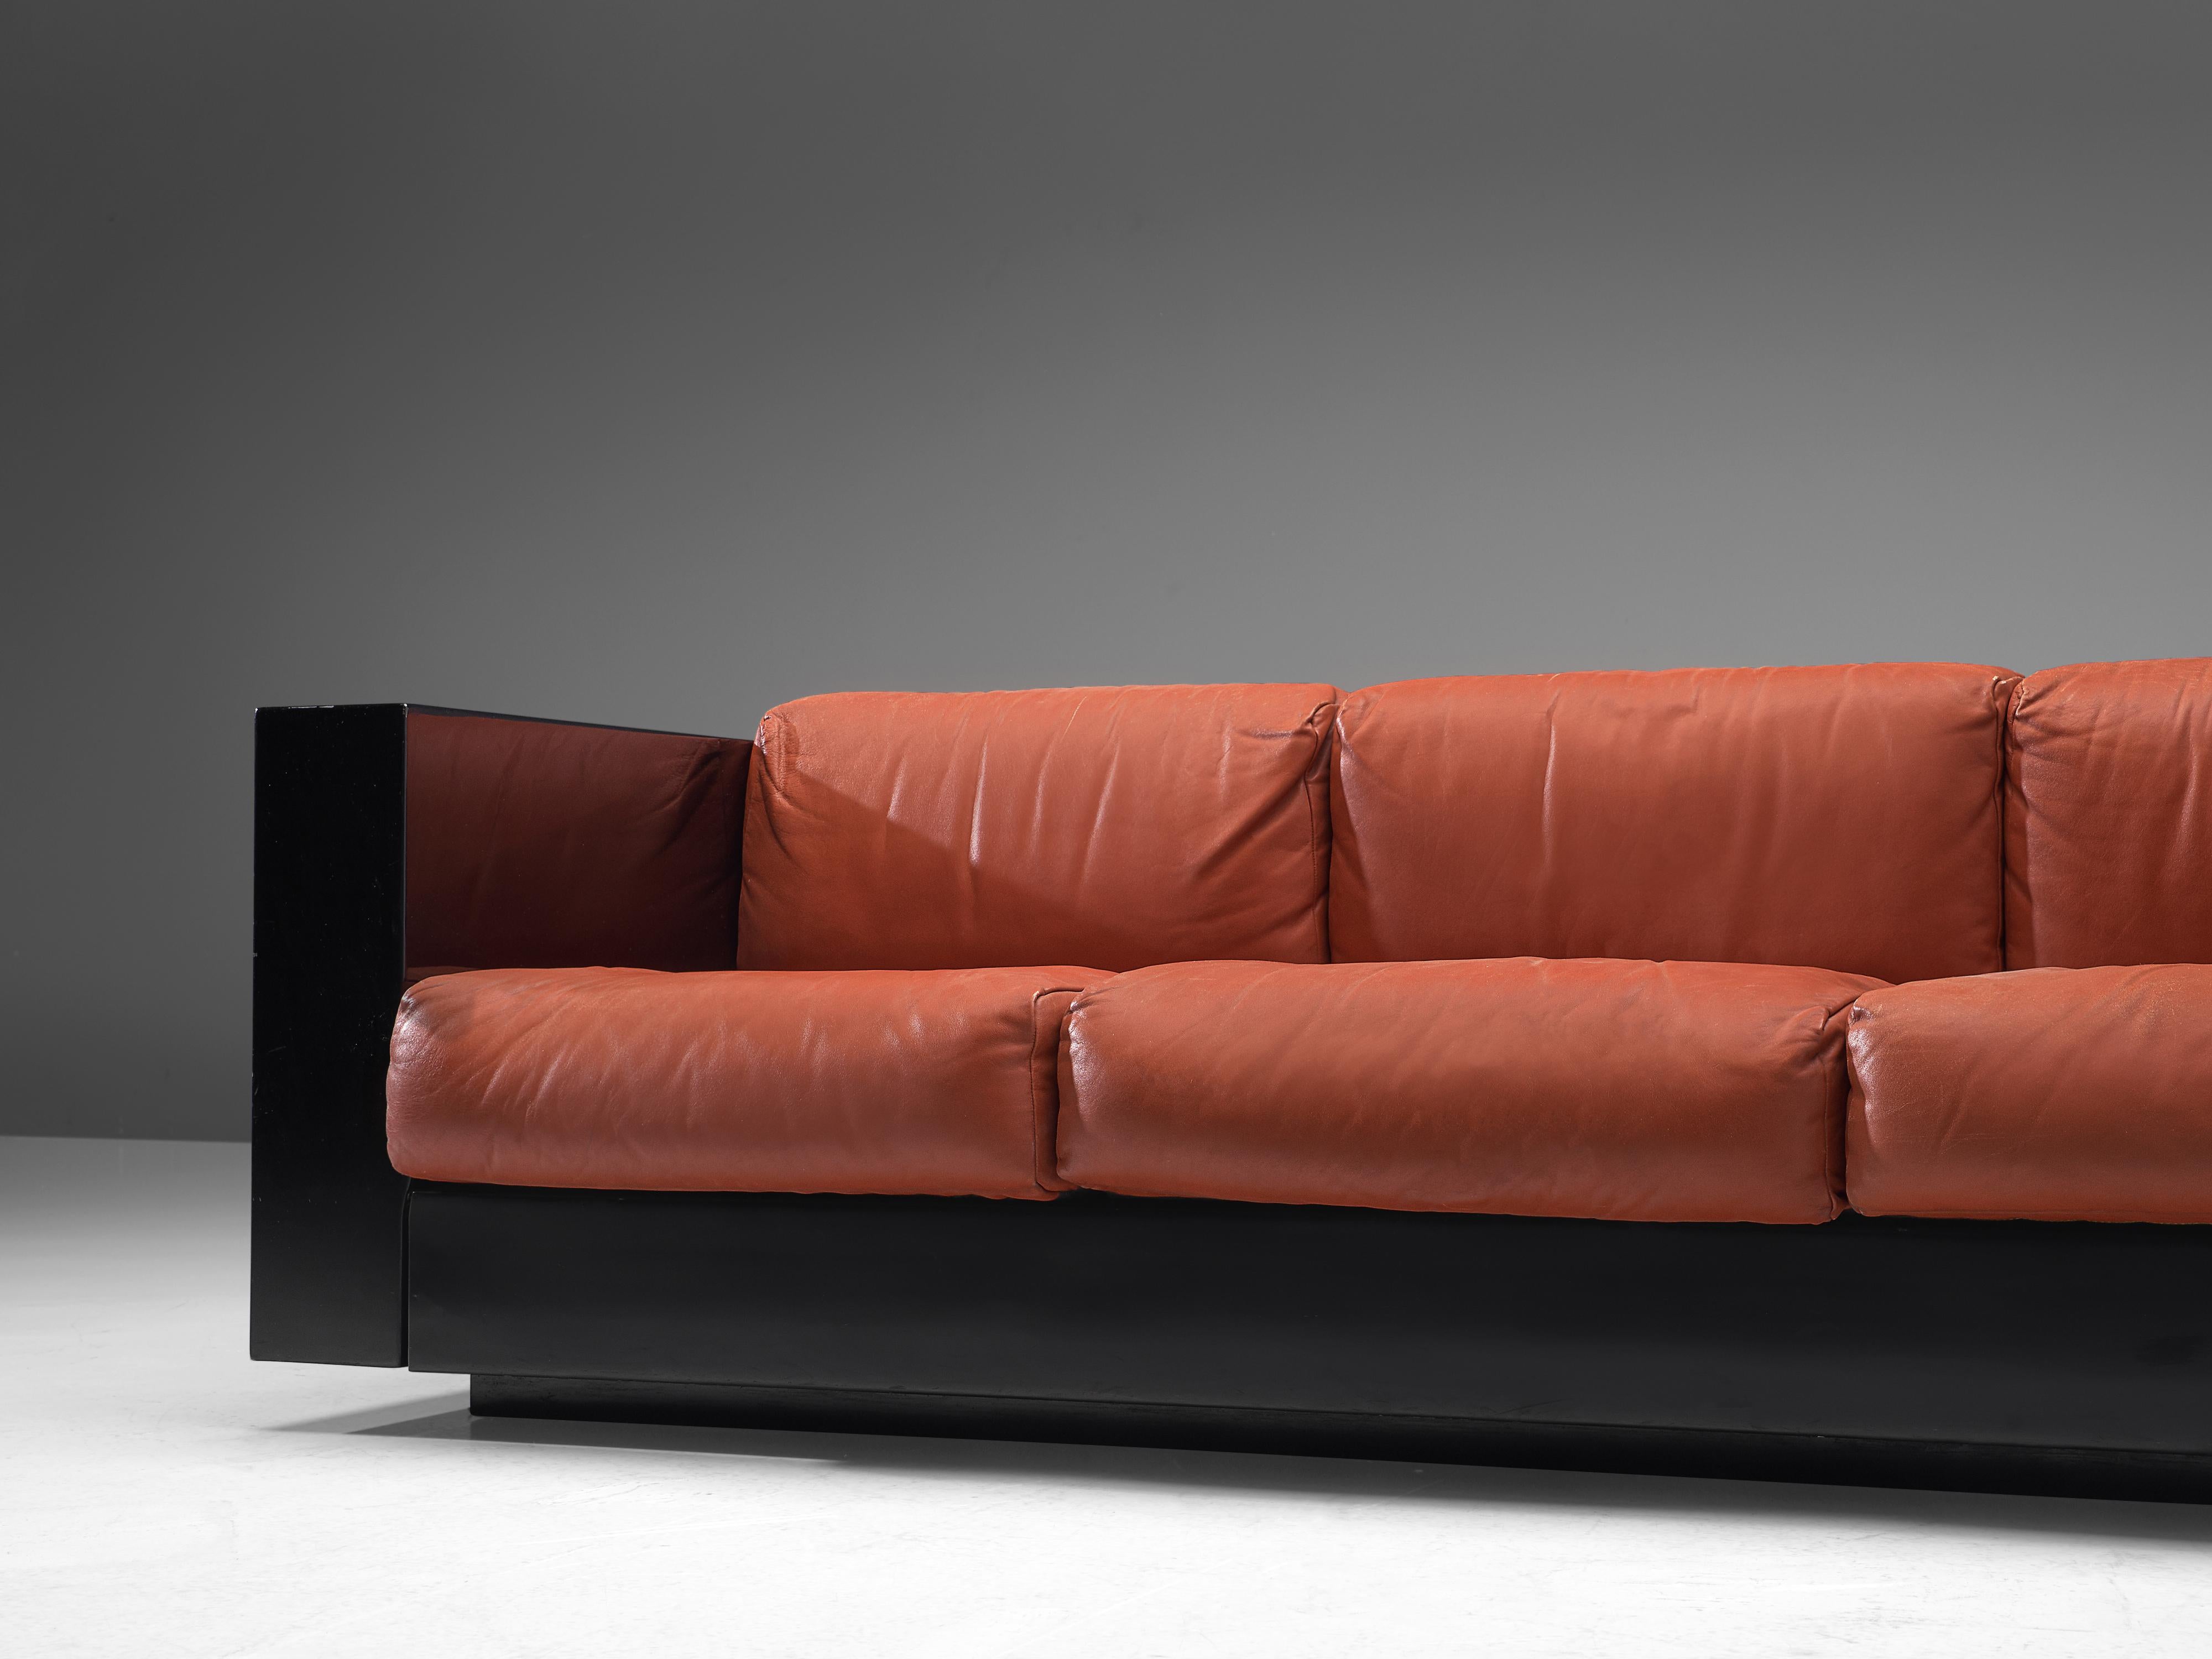 Leather Massimo and Lella Vignelli for Poltronova 'Saratoga' Sofa